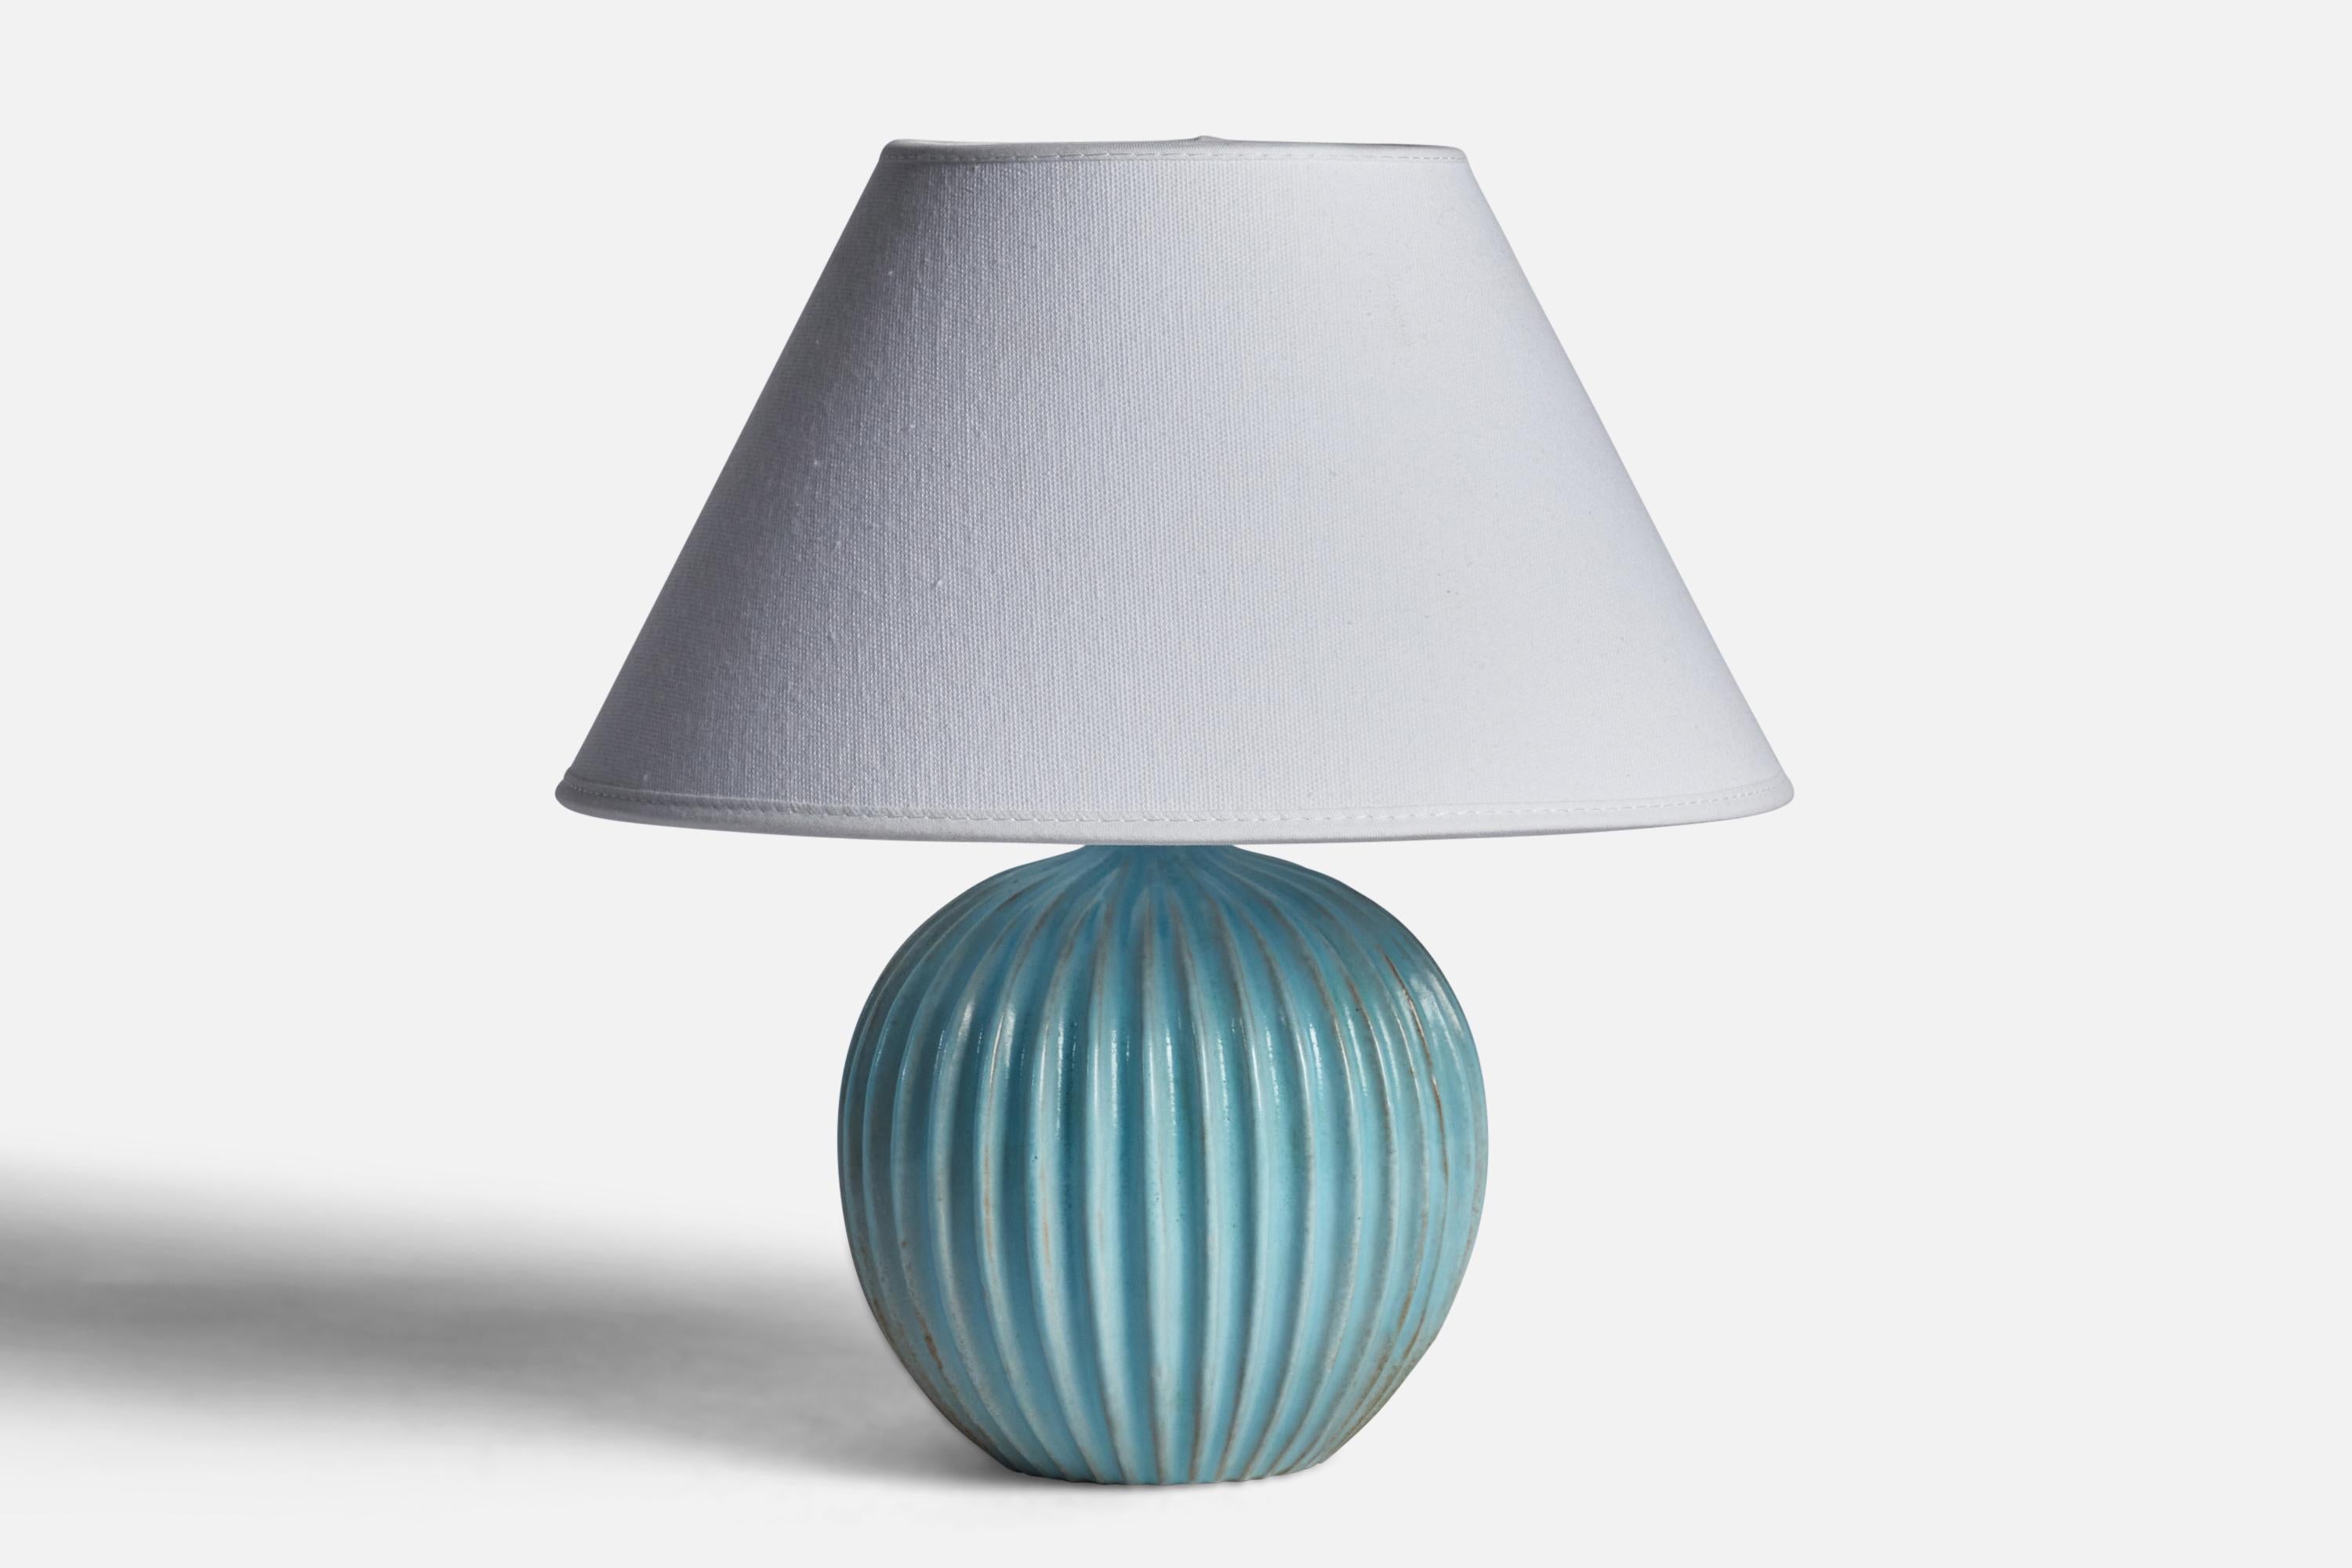 Tischlampe aus hellblau glasiertem Steingut, entworfen und hergestellt von Christian Schollert, Dänemark, um 1960.

Abmessungen der Lampe (Zoll): 7,65